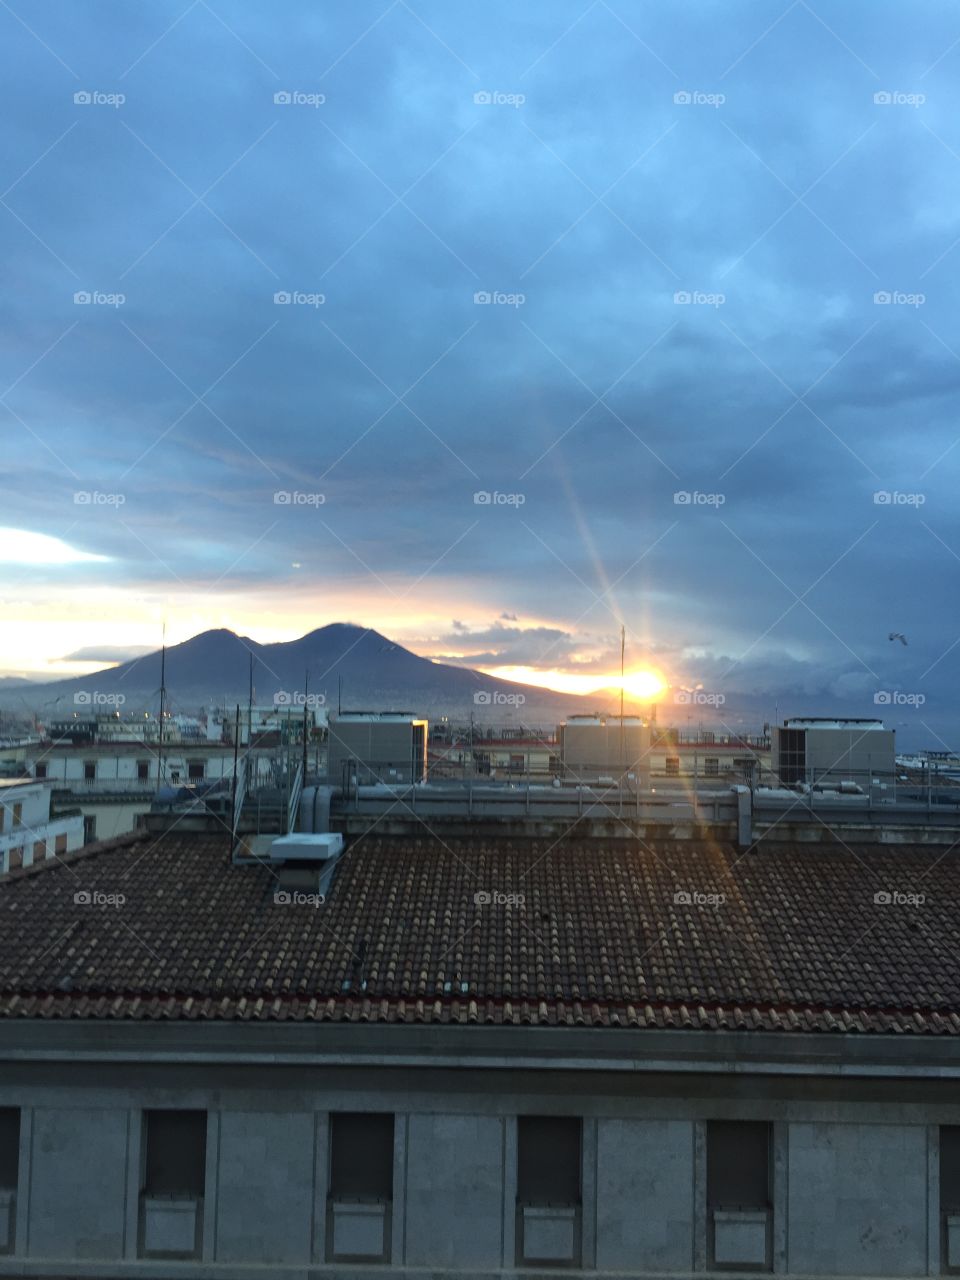 Mount Vesuvius. Naples, Italy